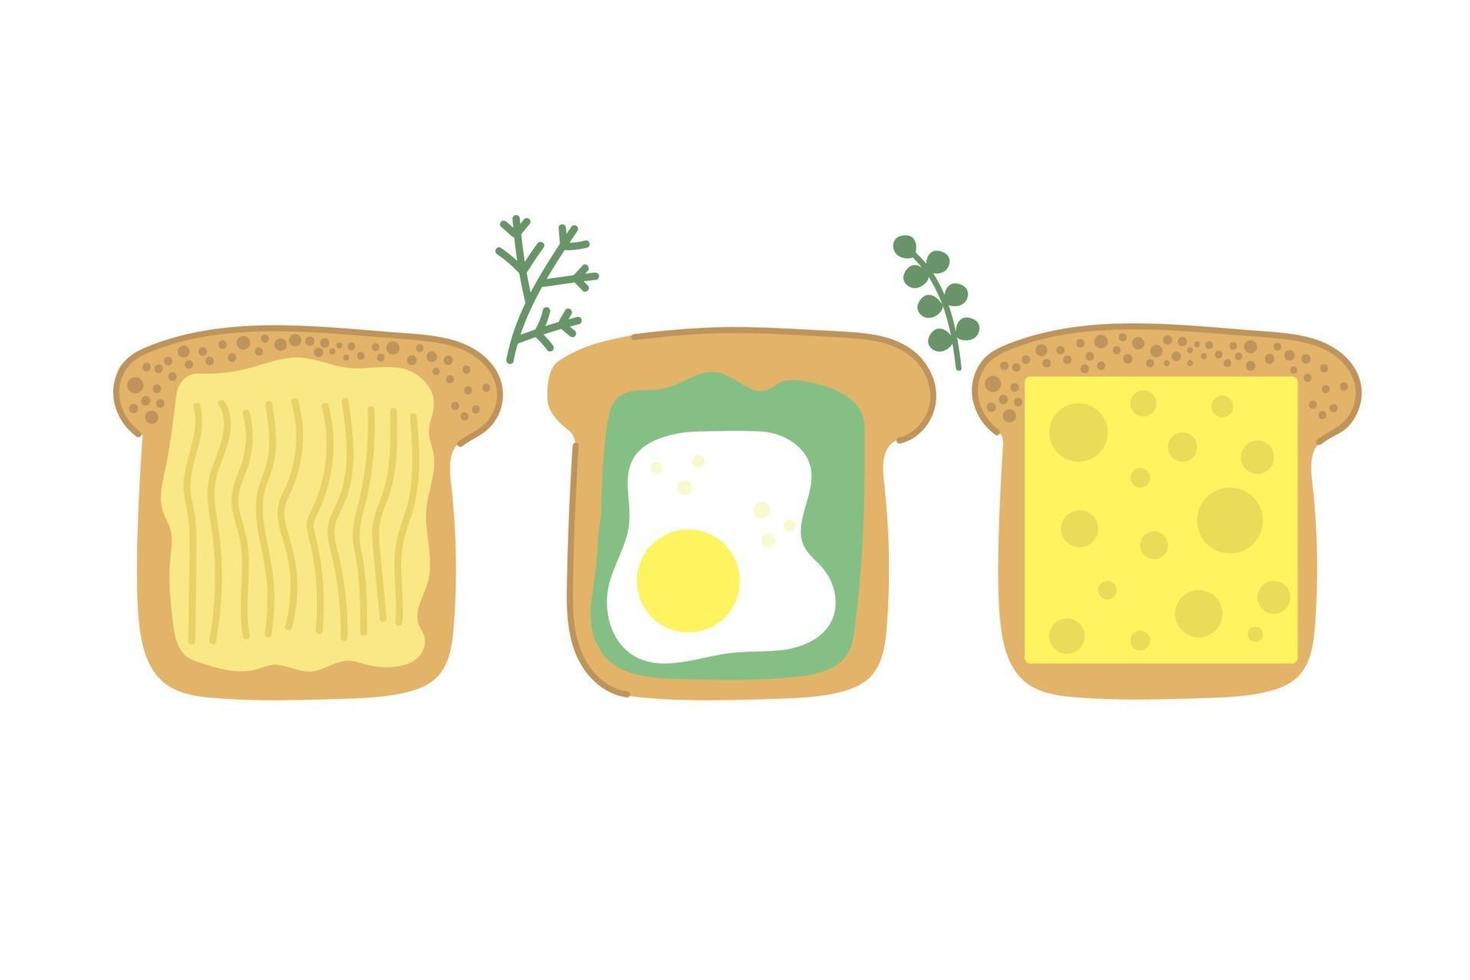 mão desenhada fatia de pão saborosa torrada com manteiga ovo frito abacate e queijo conceito moderno de ilustração plana de café da manhã vetor